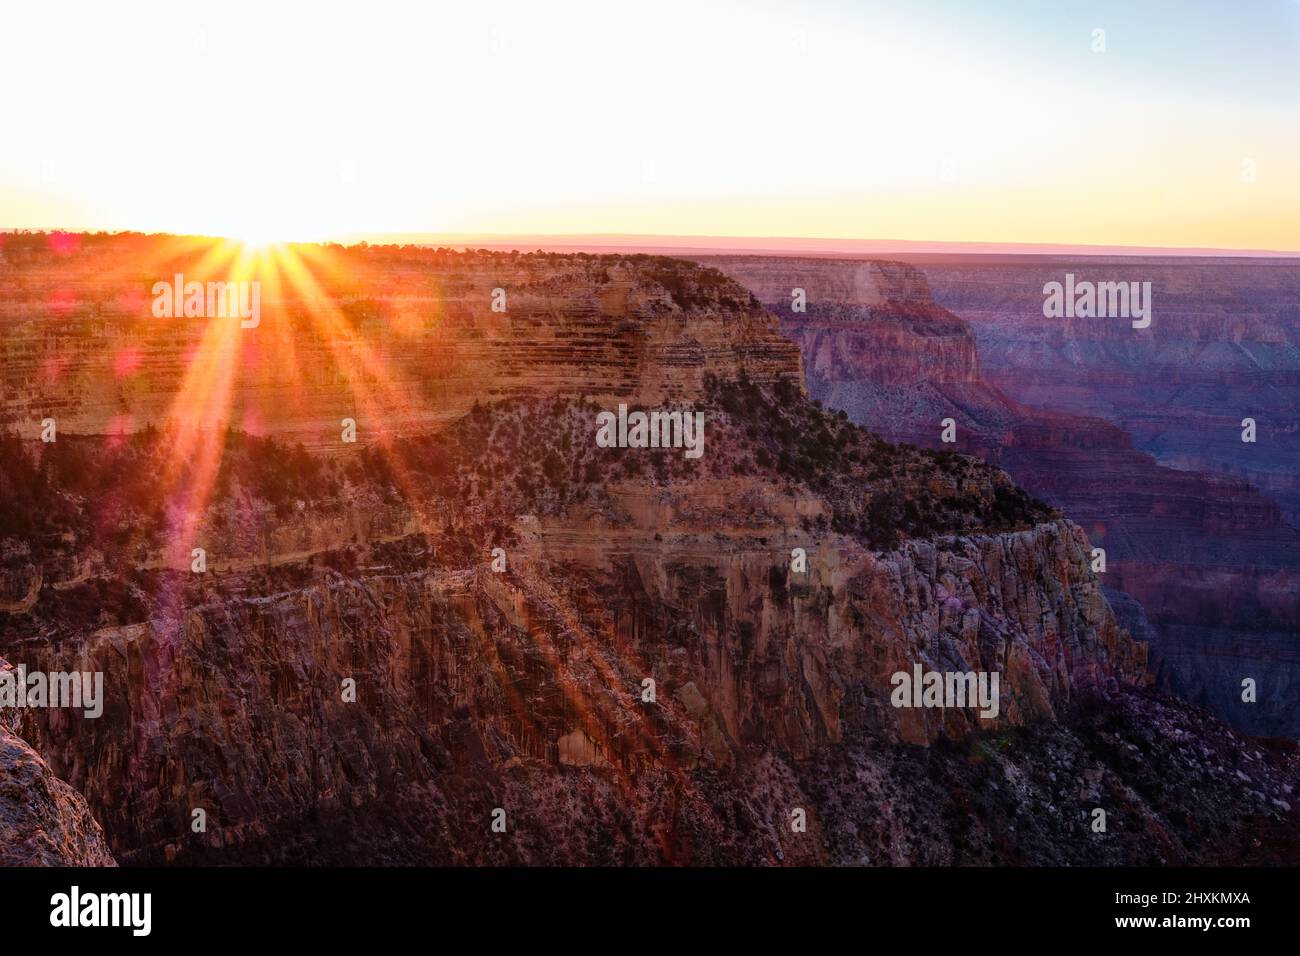 Cuando el sol se pone cerca de Hopi Point en el Parque Nacional del Gran Cañón, rayos de sol rojos, naranjas y amarillos se extienden por debajo del borde del cañón Foto de stock